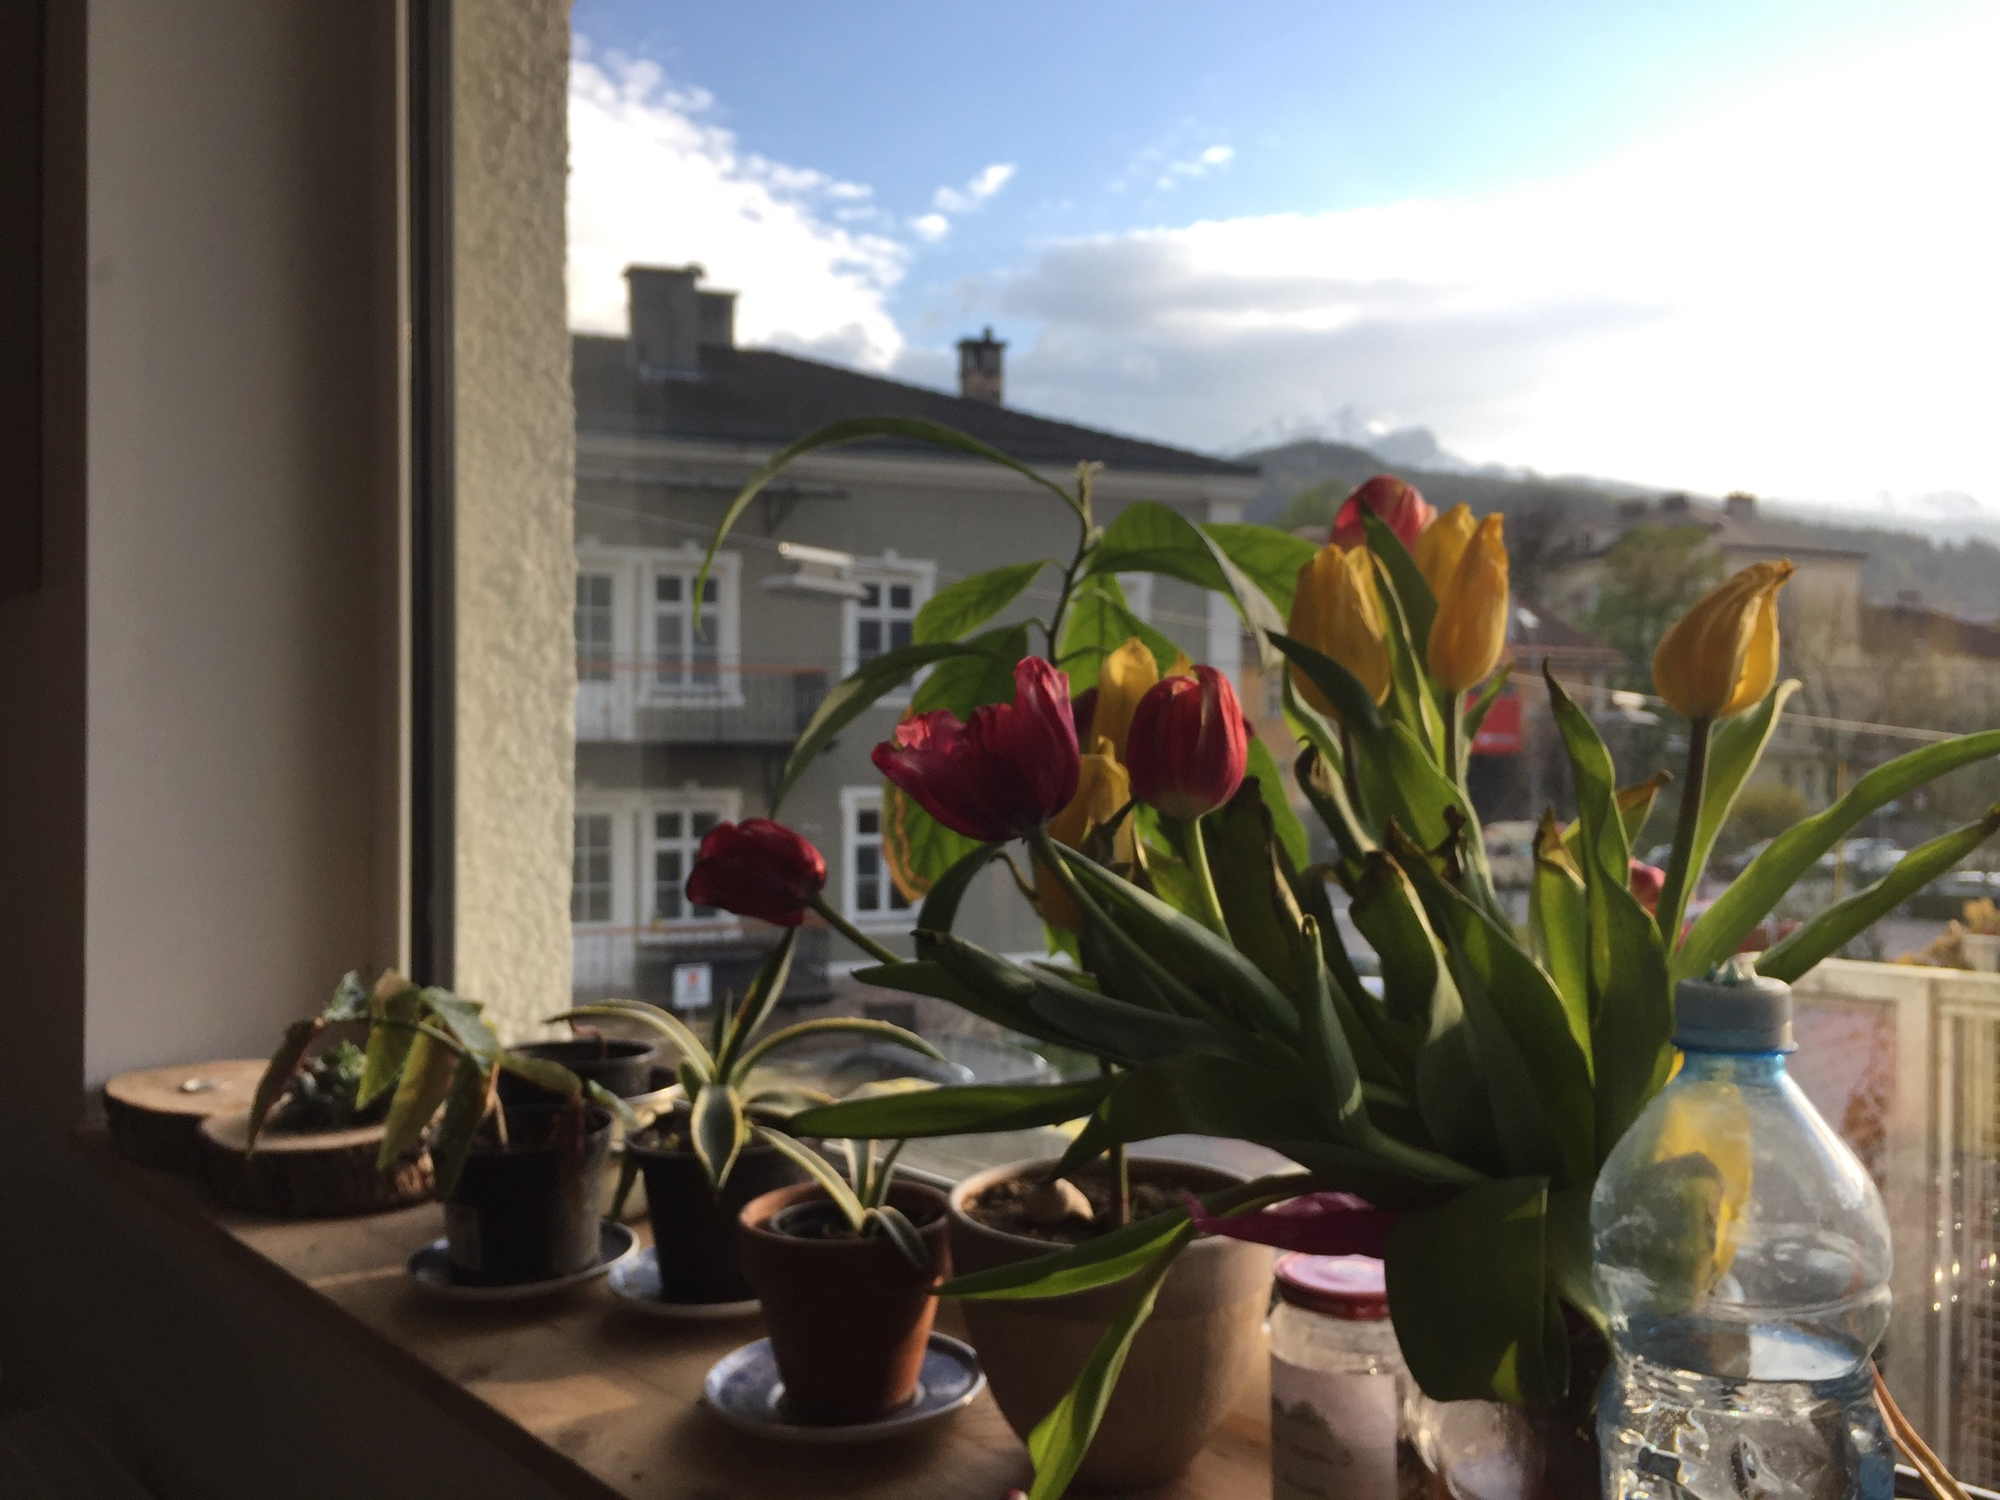 Blick in die Nachmittagssonne von innen nach außen aus dem Fenster des Kochlokals, im Vordergrund ein bunter Strauß Tulpen